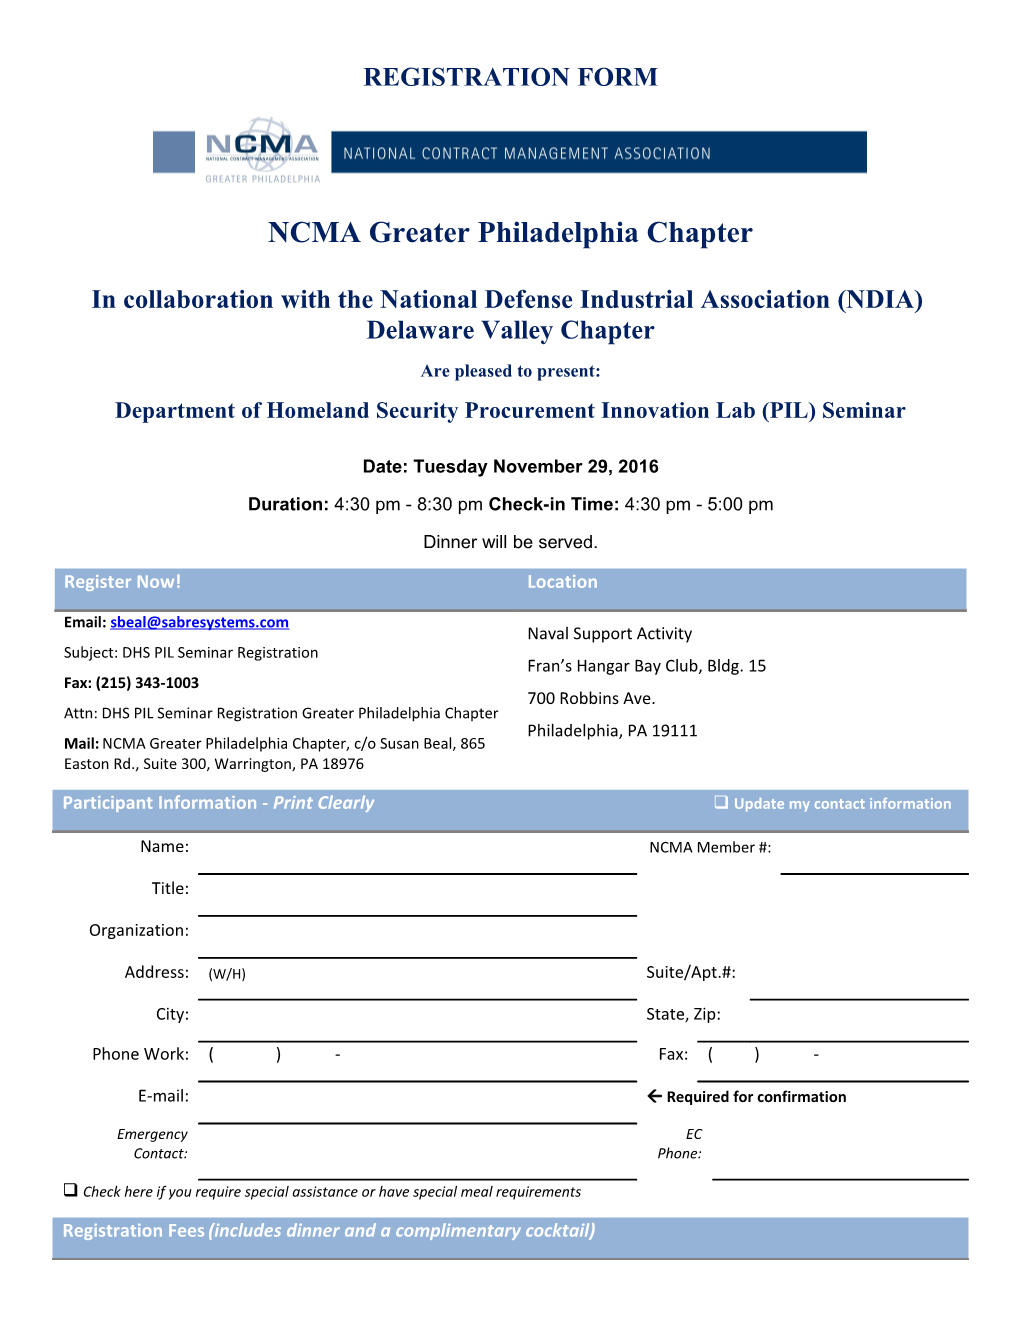 NCMA Greater Philadelphia Chapter